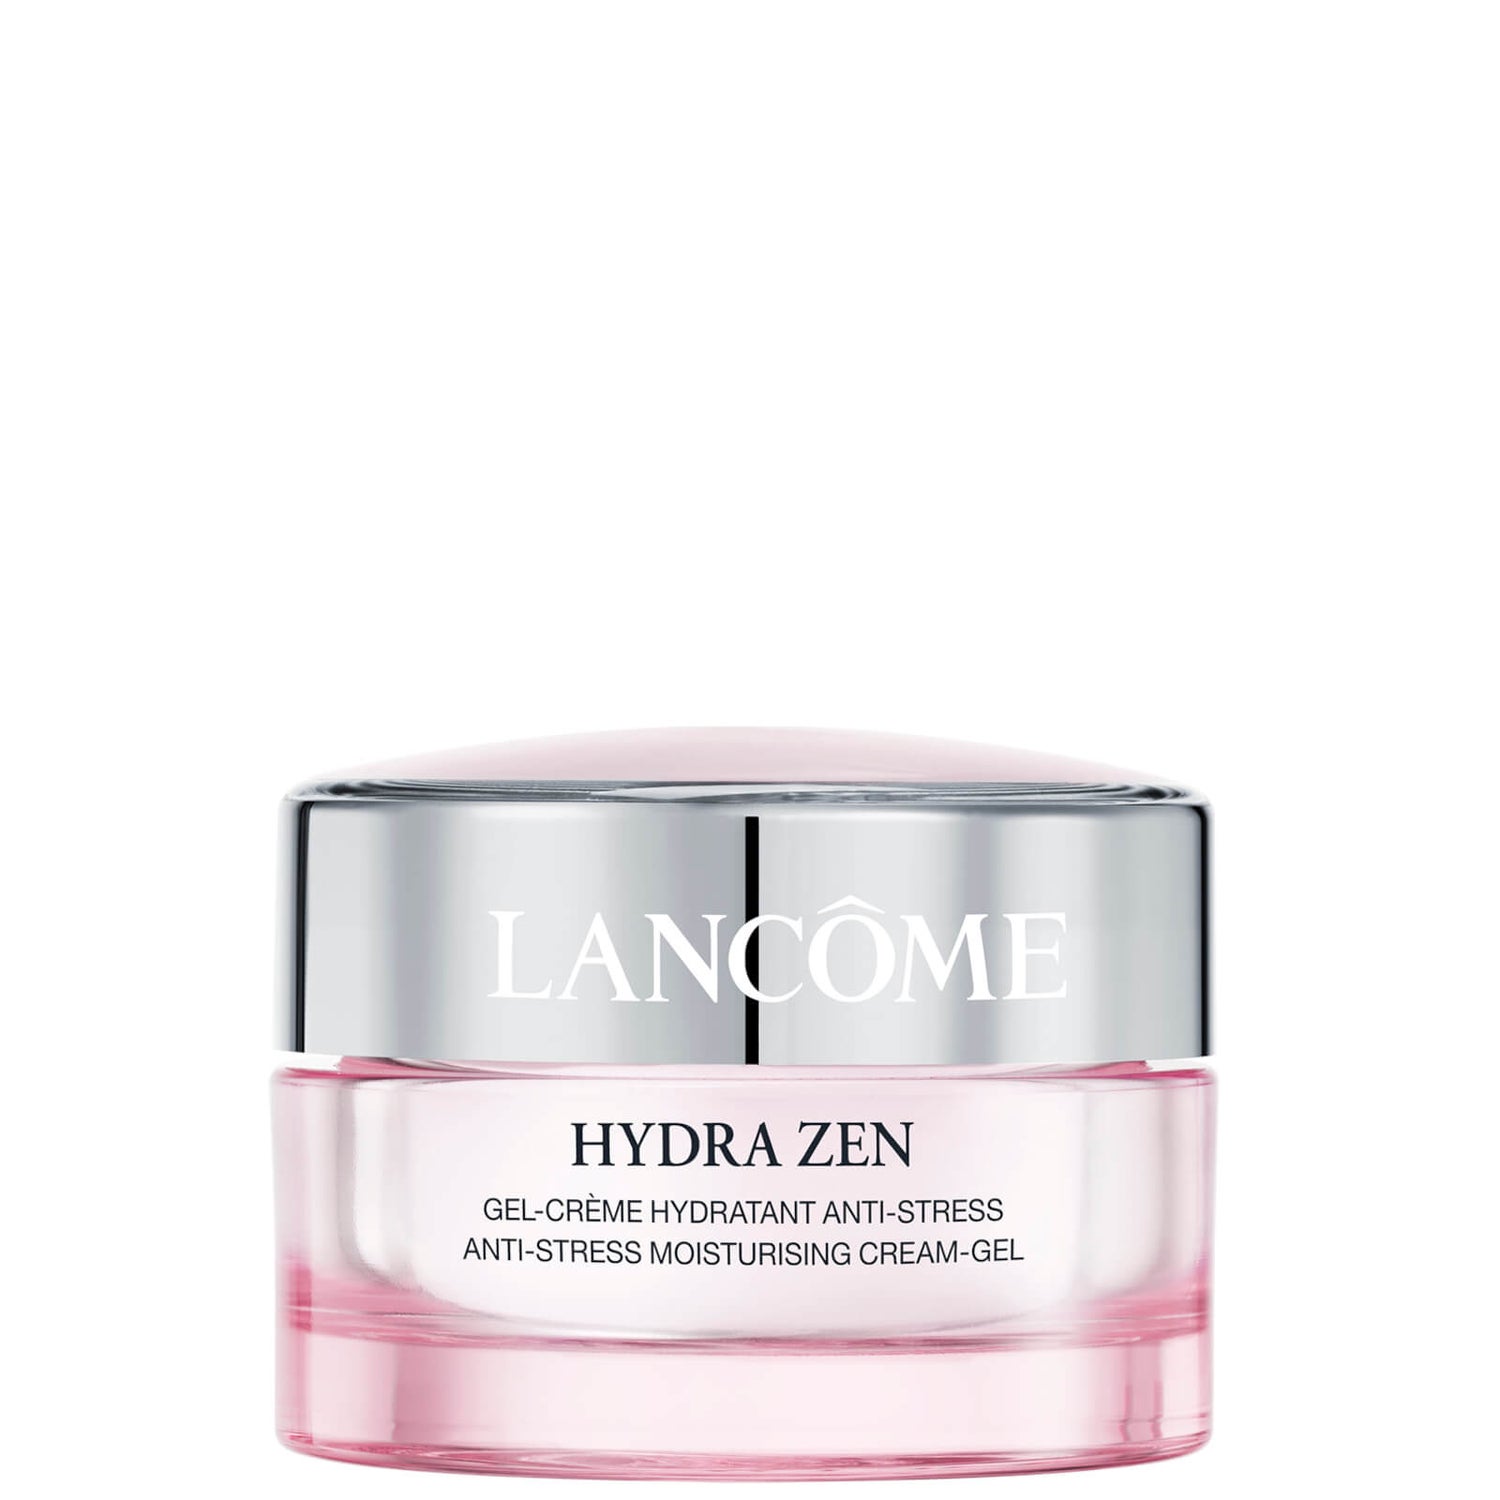 Lancôme Exclusive Hydra Zen Day Crema-Gel